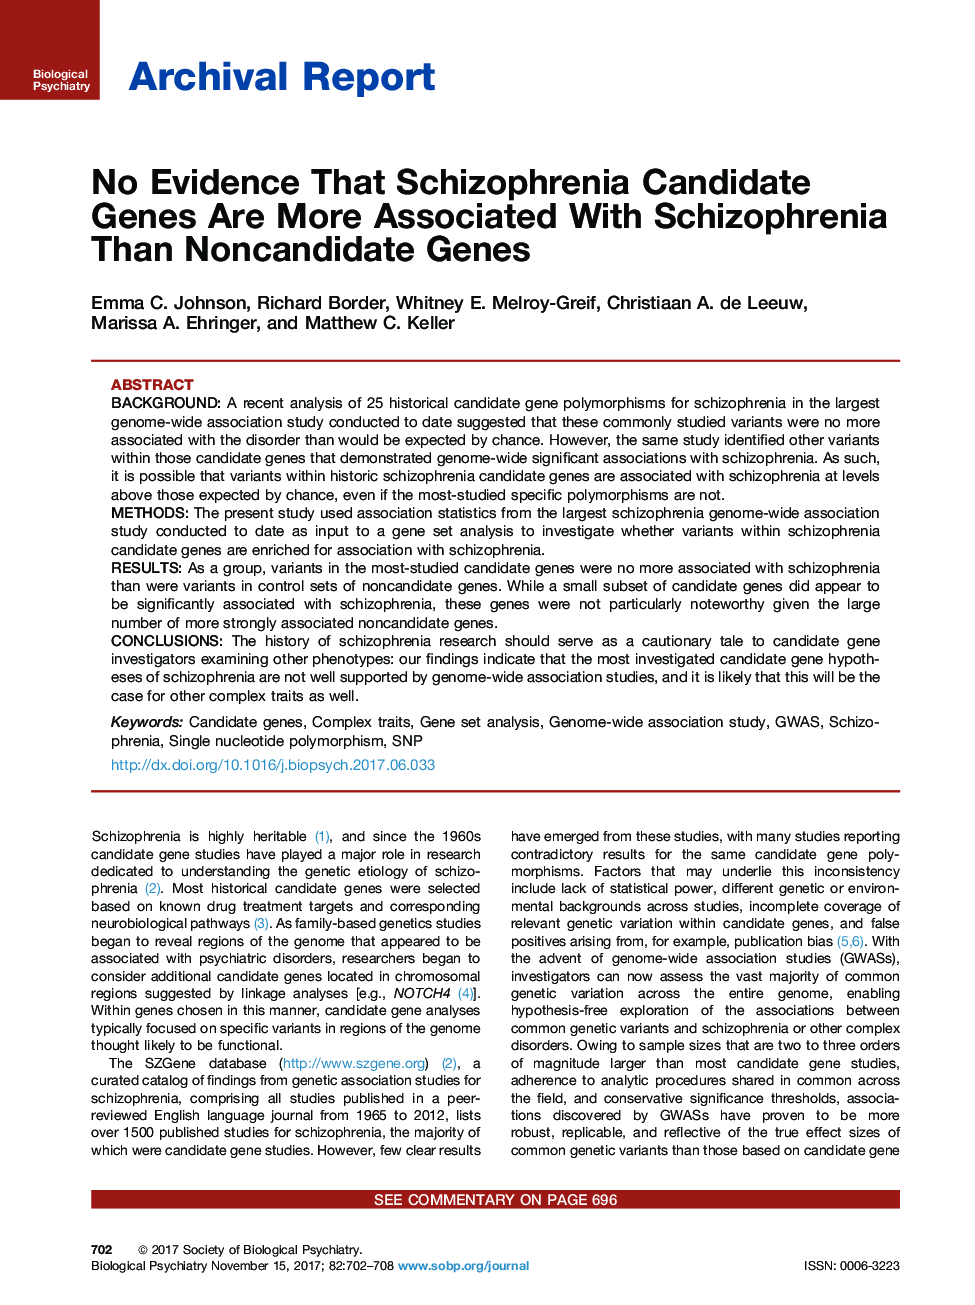 هیچ شواهدی وجود ندارد که ژن های نامطلوب اسکیزوفرنی بیشتر با اسکیزوفرنی همراه با ژن های غیر نامطلوب 